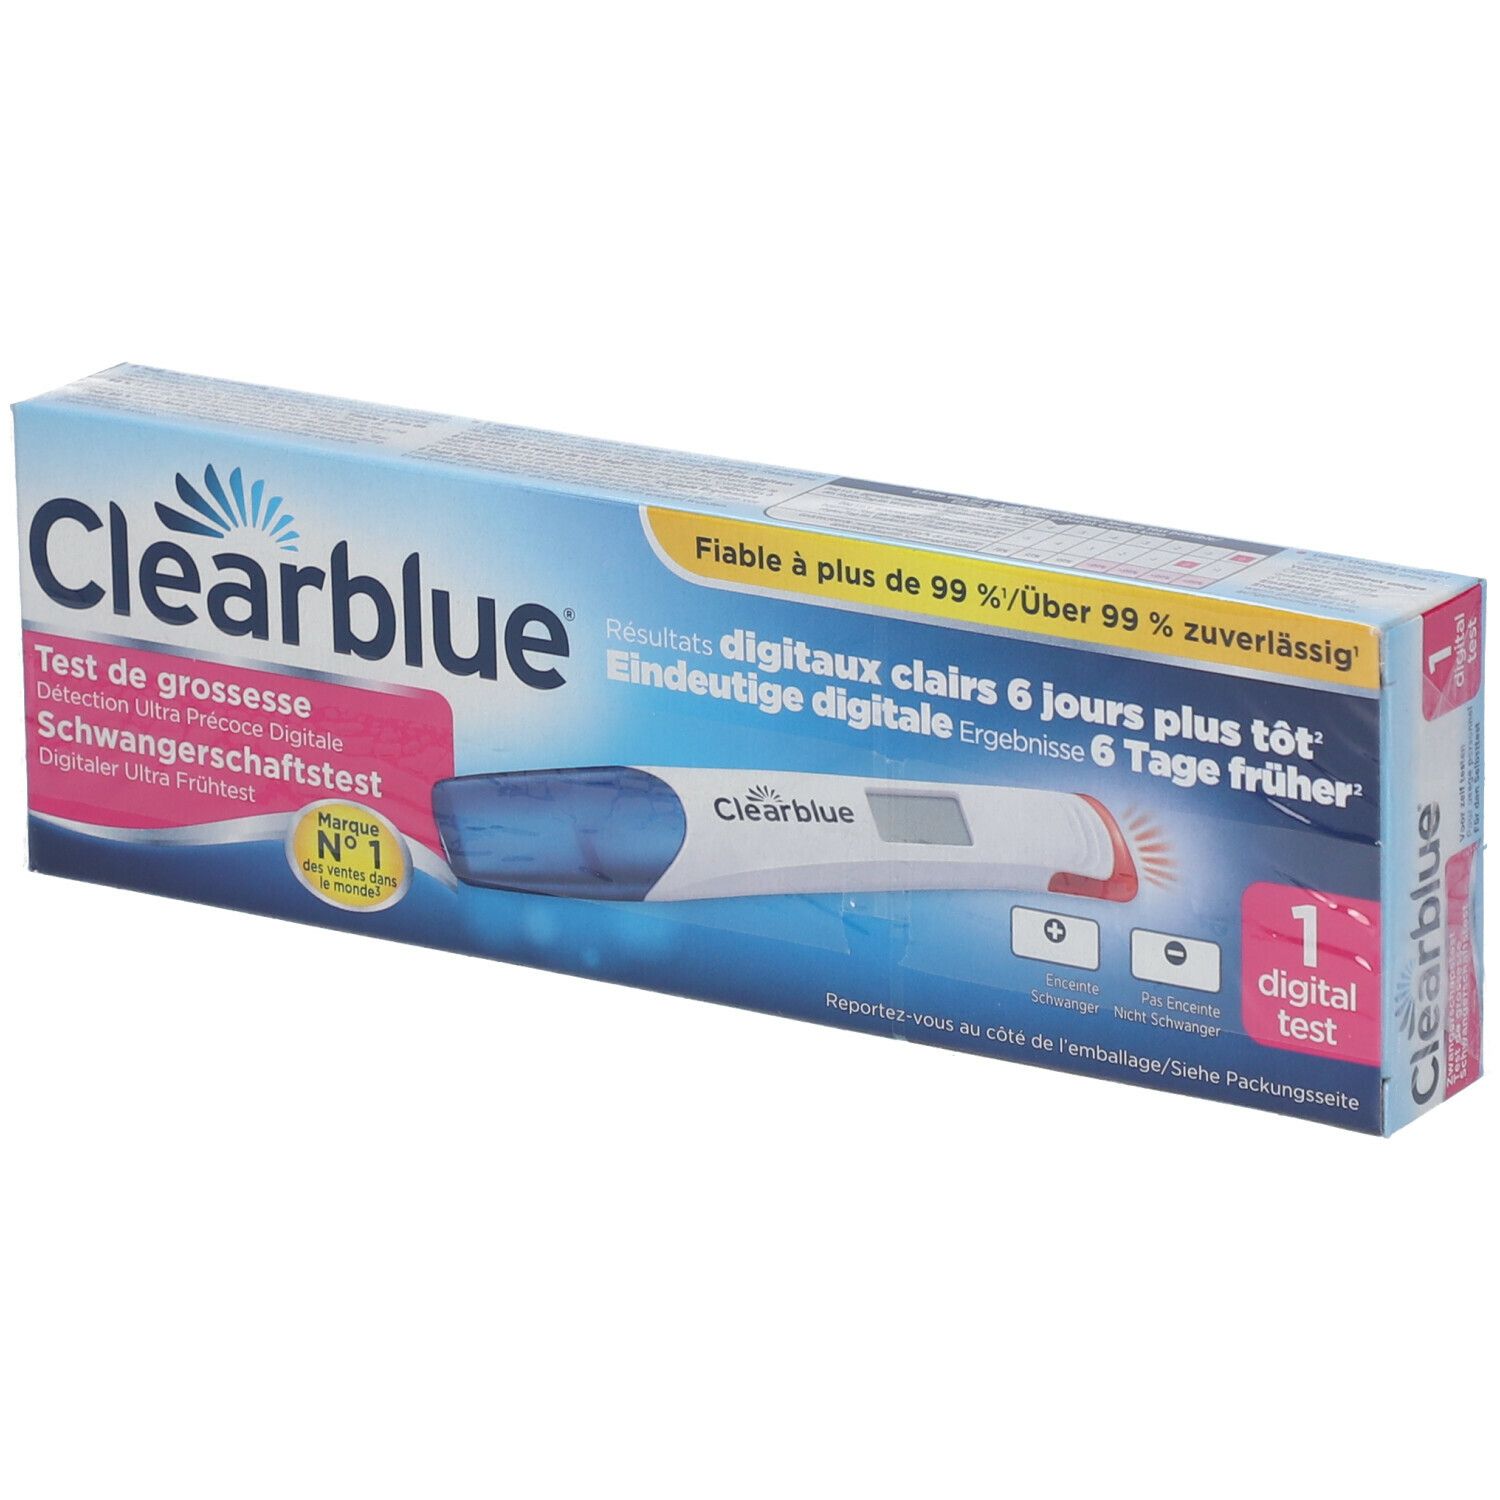 Clearblue® Test de Grossesse Détection Ultra Précoce Digital